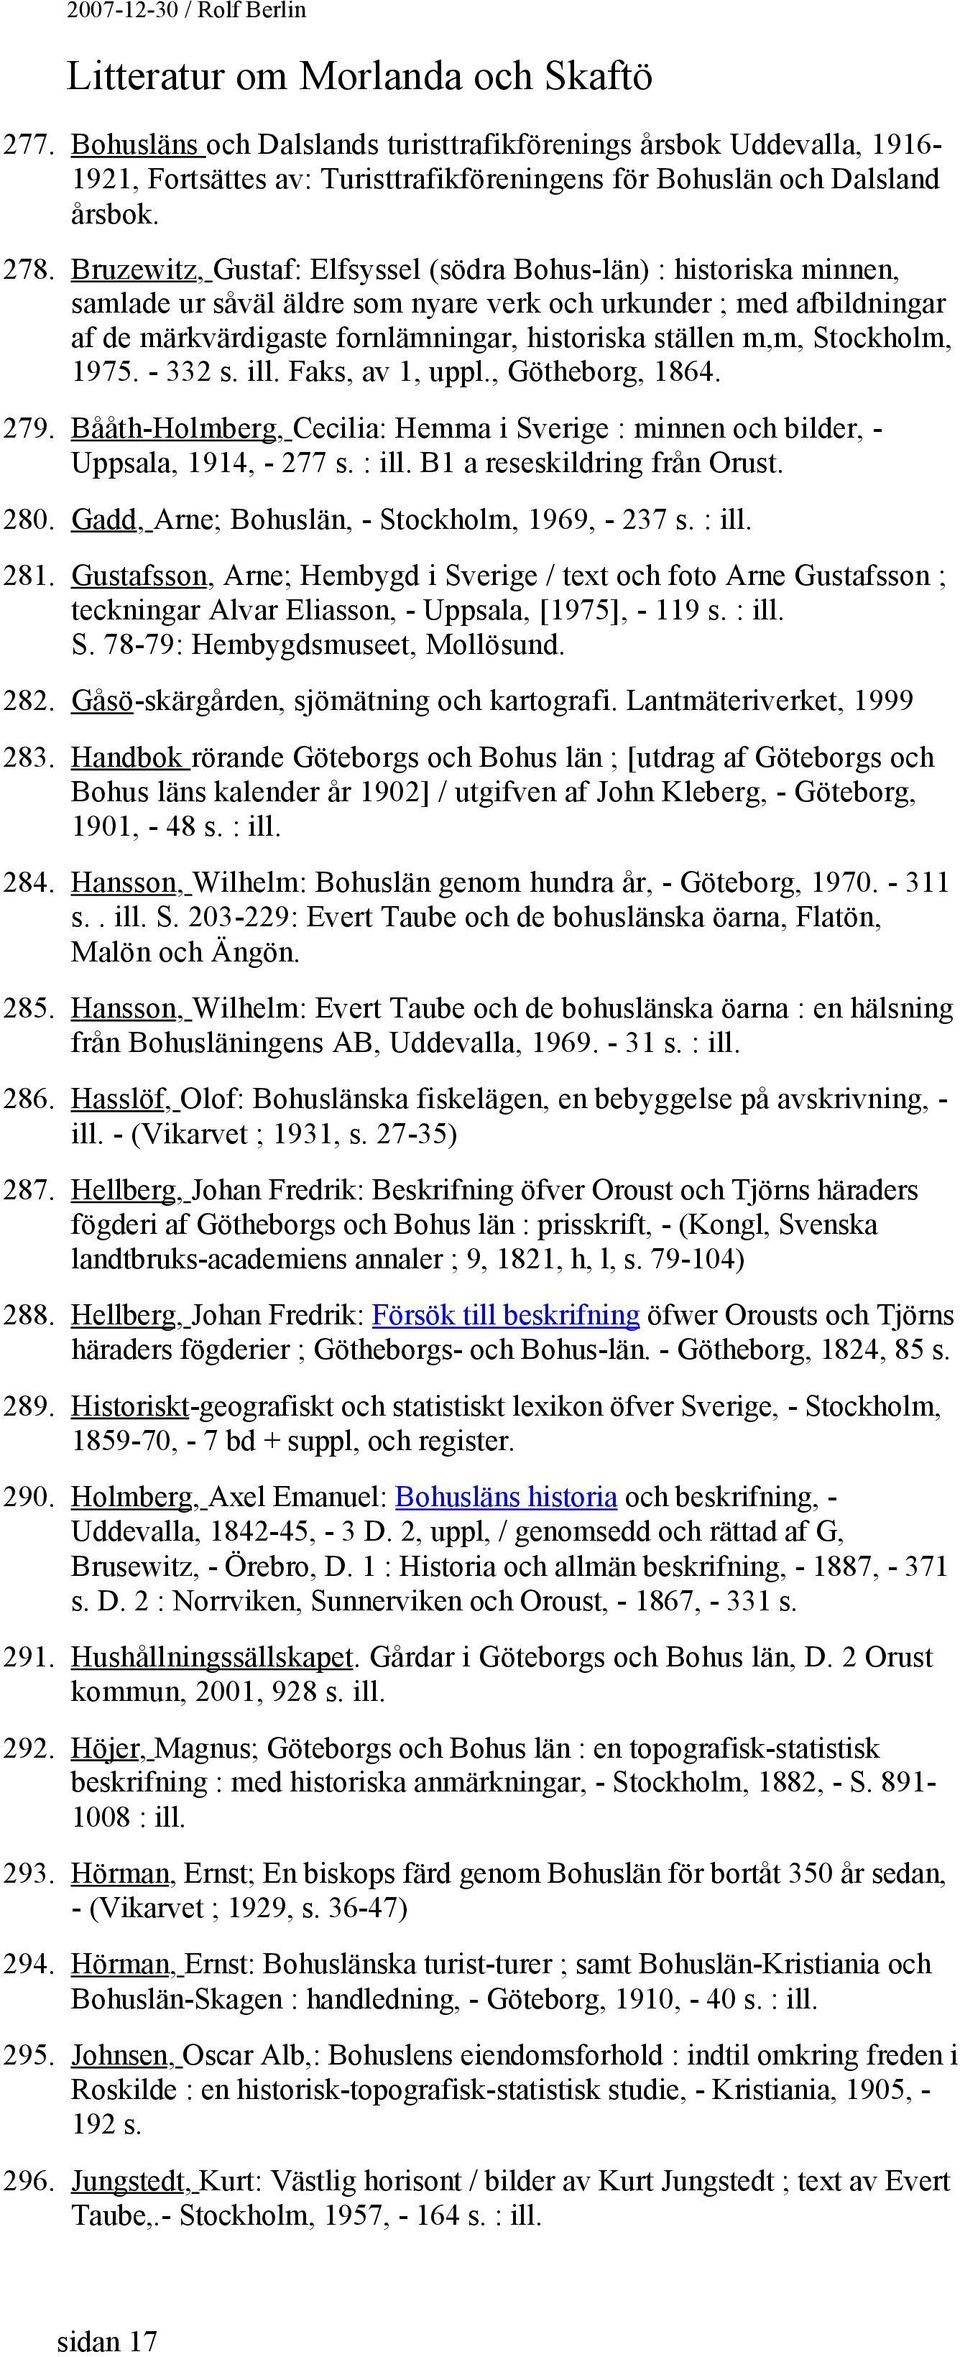 Stockholm, 1975. - 332 s. ill. Faks, av 1, uppl., Götheborg, 1864. 279. Bååth-Holmberg, Cecilia: Hemma i Sverige : minnen och bilder, - Uppsala, 1914, - 277 s. : ill. B1 a reseskildring från Orust.